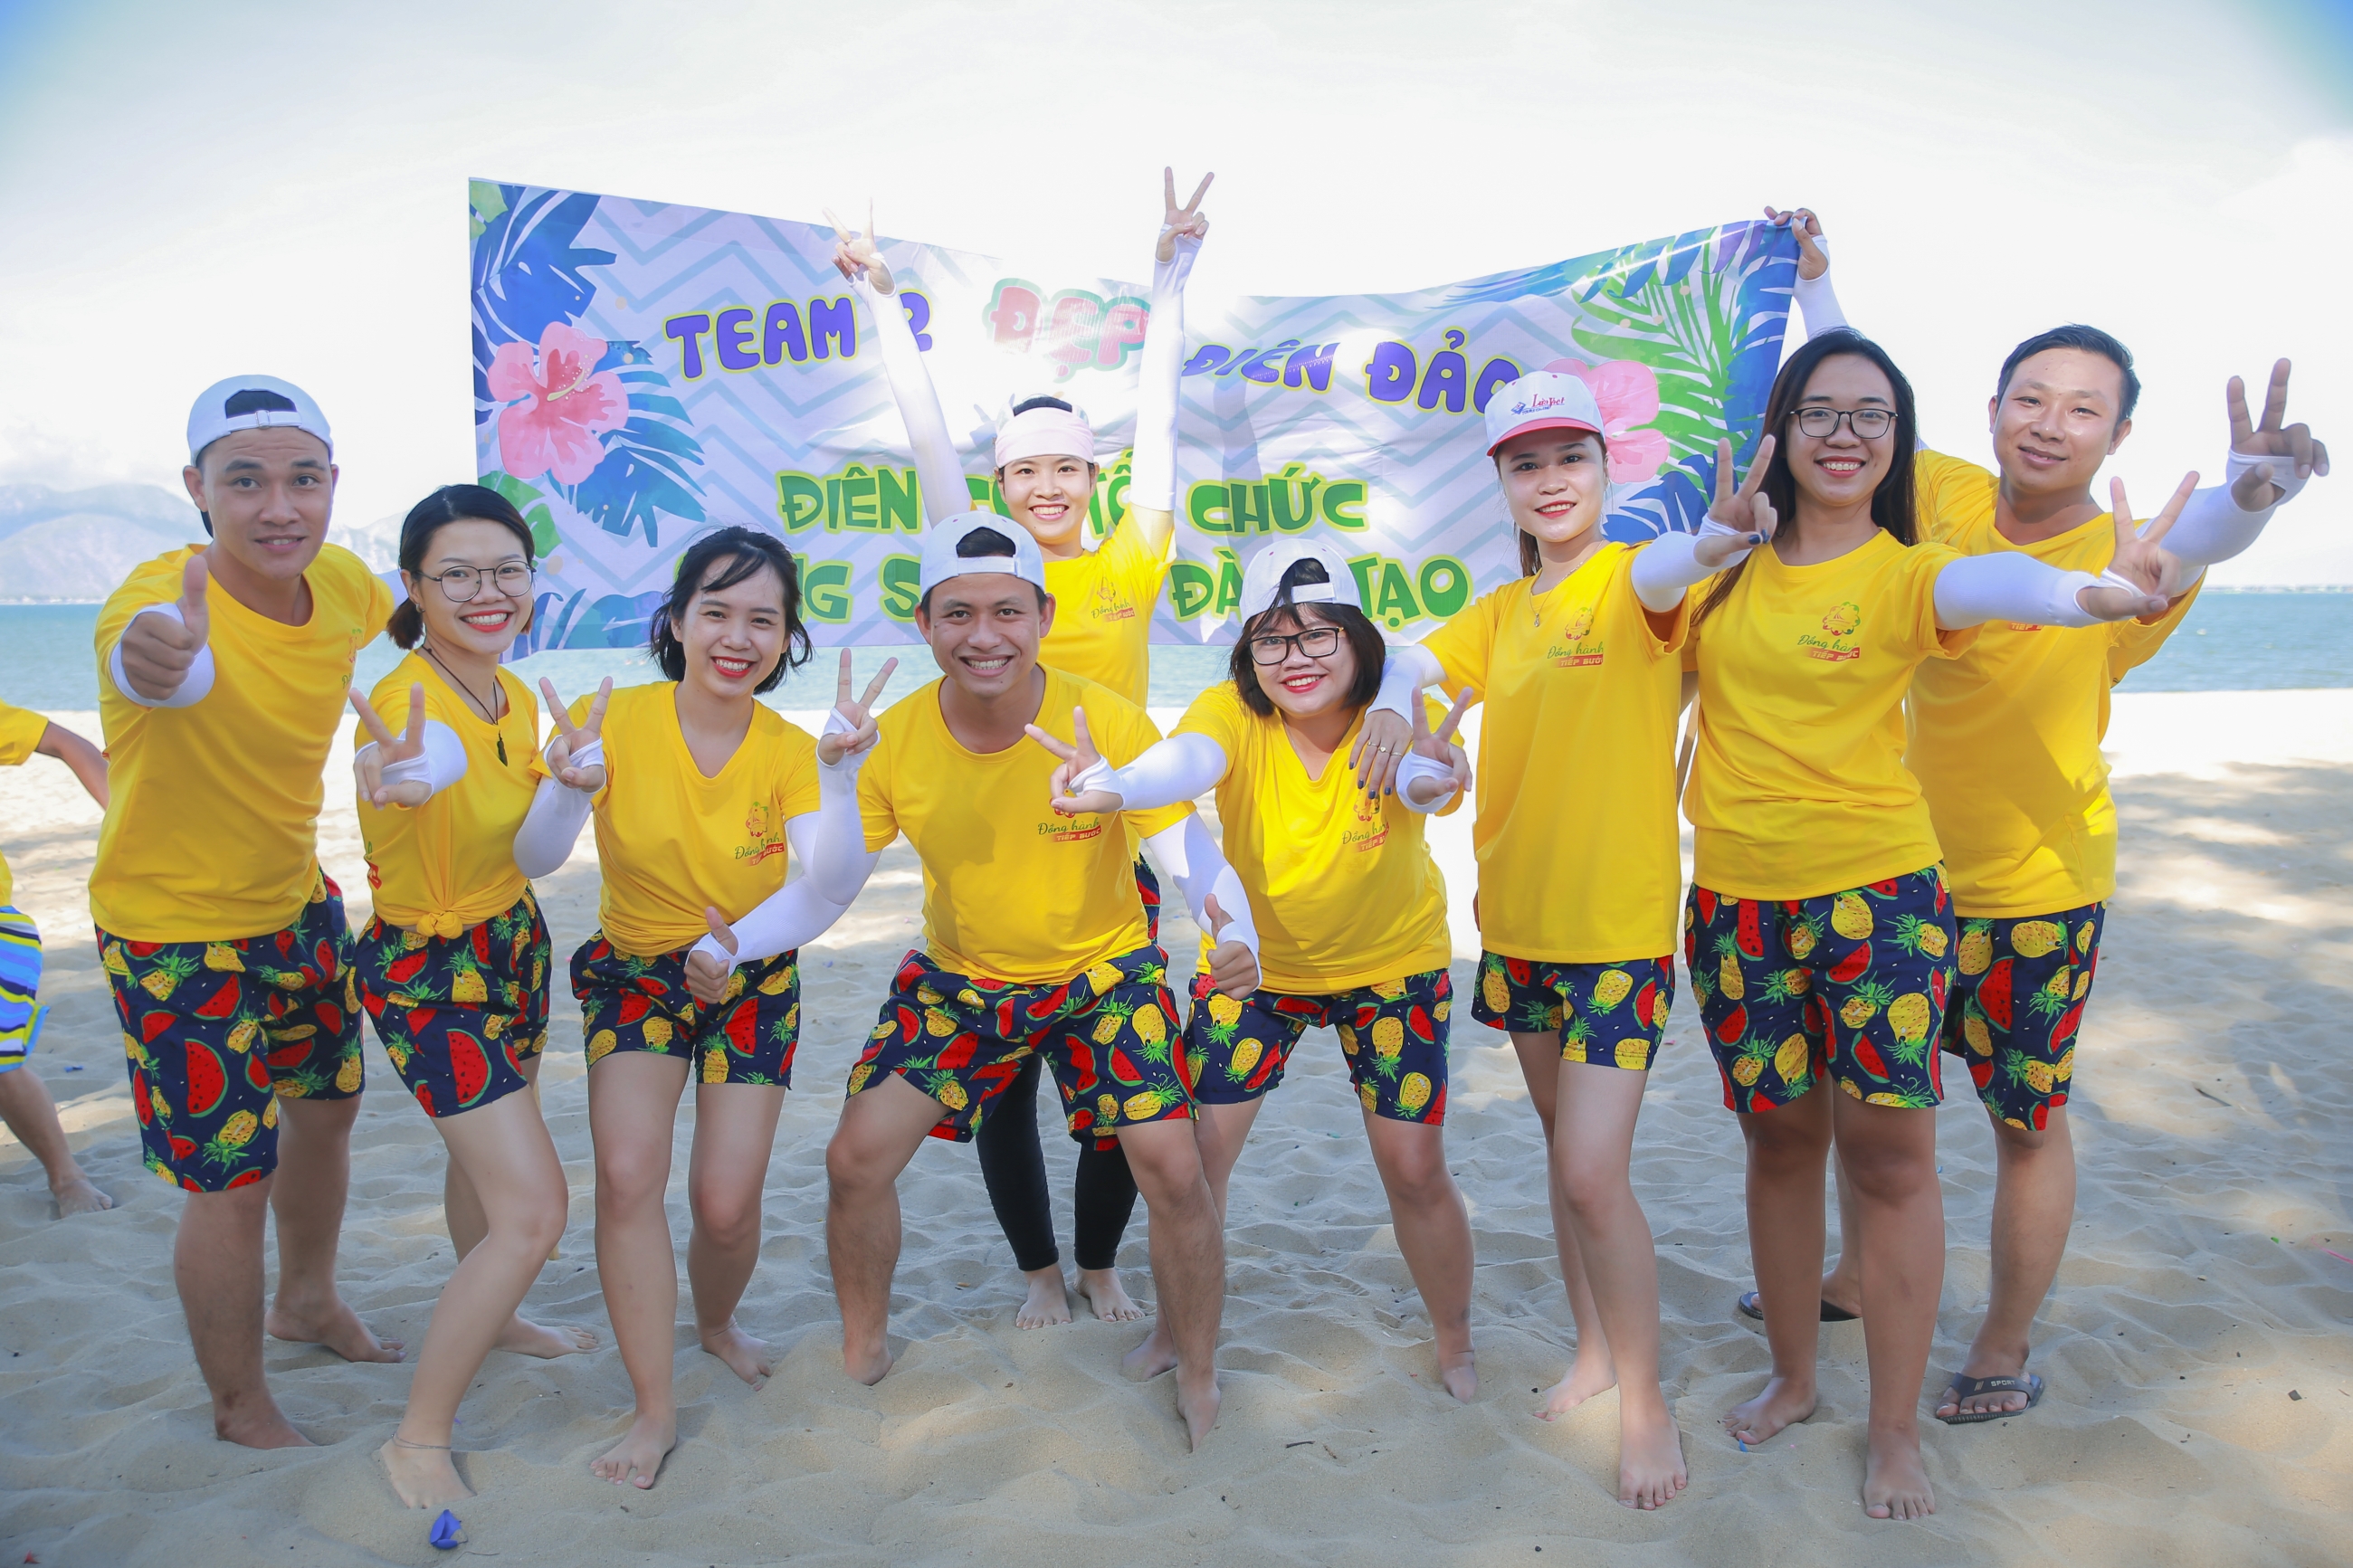 Phát Hoàng Gia Teambuilding - 6 years 1 way